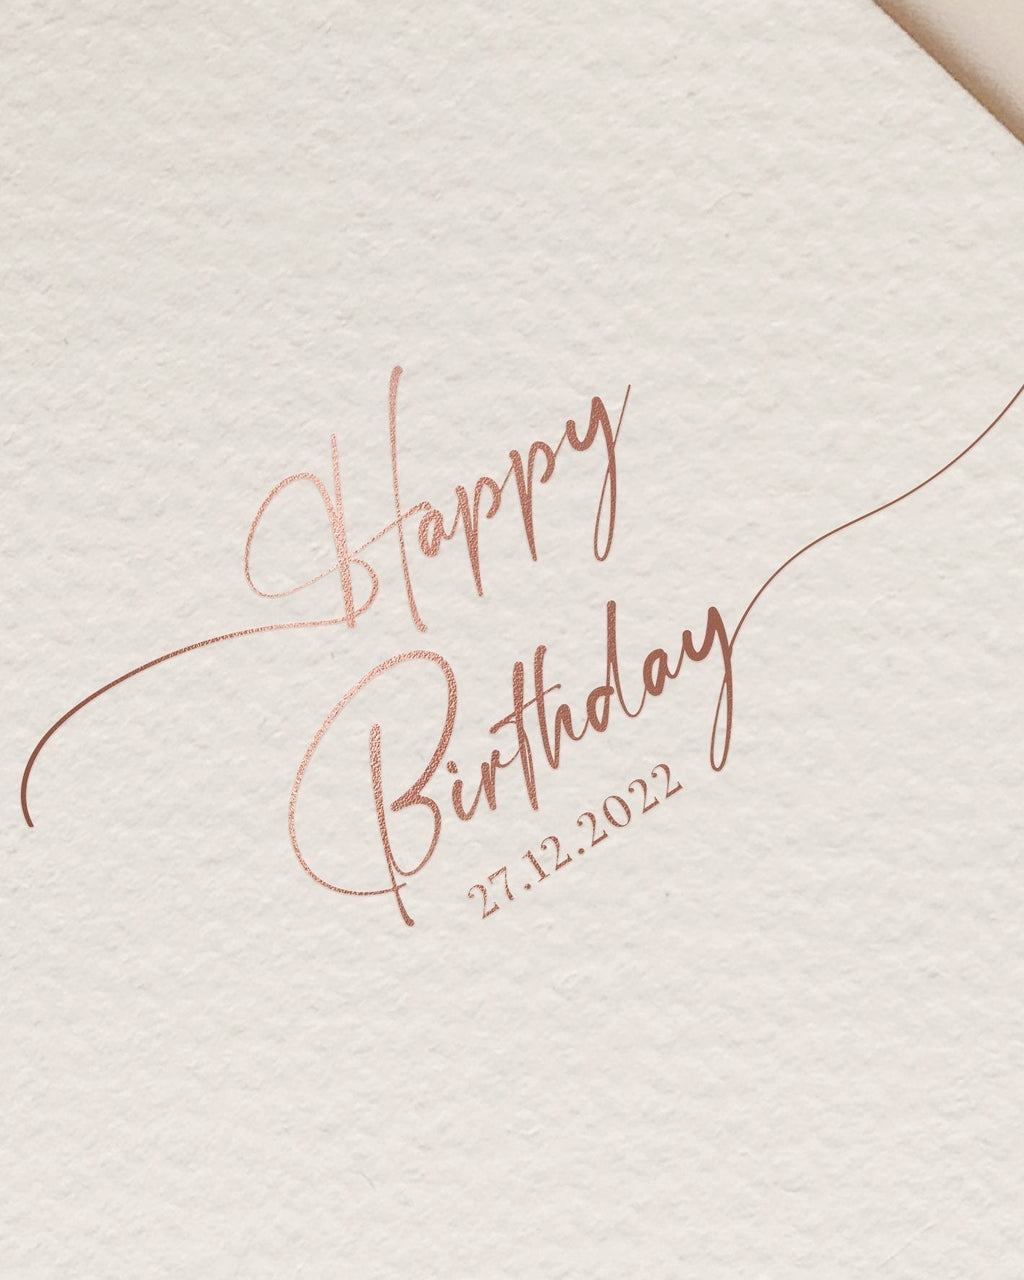 Đừng bỏ lỡ cơ hội để tạo nên một bữa tiệc sinh nhật đặc biệt với phông chữ Happy Birthday đẹp nhất. Với các chi tiết tinh tế và thiết kế độc đáo, phông chữ này sẽ mang đến cho bạn một bữa tiệc sinh nhật đáng nhớ. Hãy thể hiện tình cảm của mình với phông chữ đẹp mắt này.